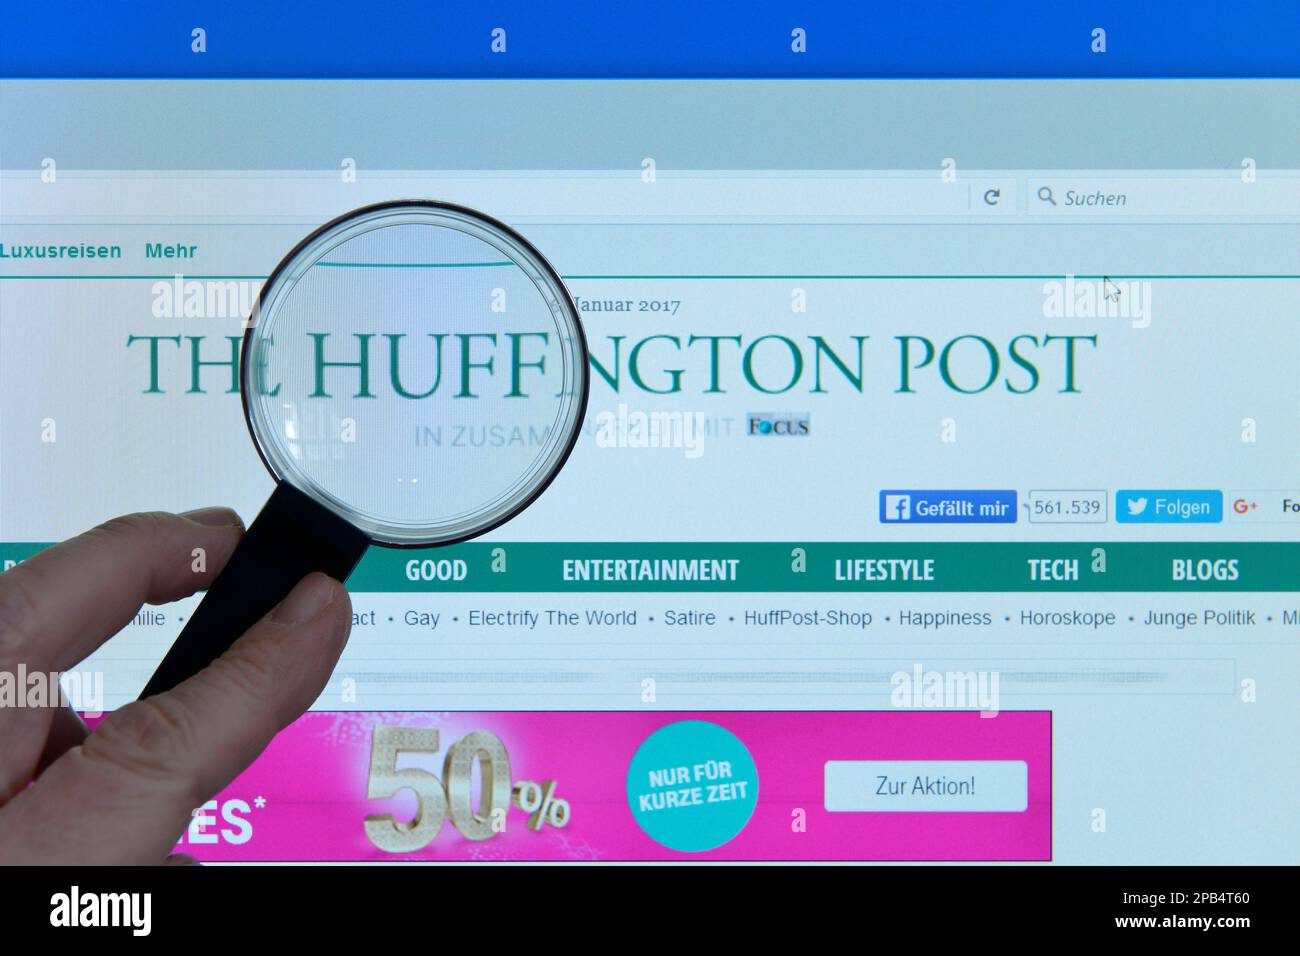 Huffington post immagini e fotografie stock ad alta risoluzione - Alamy